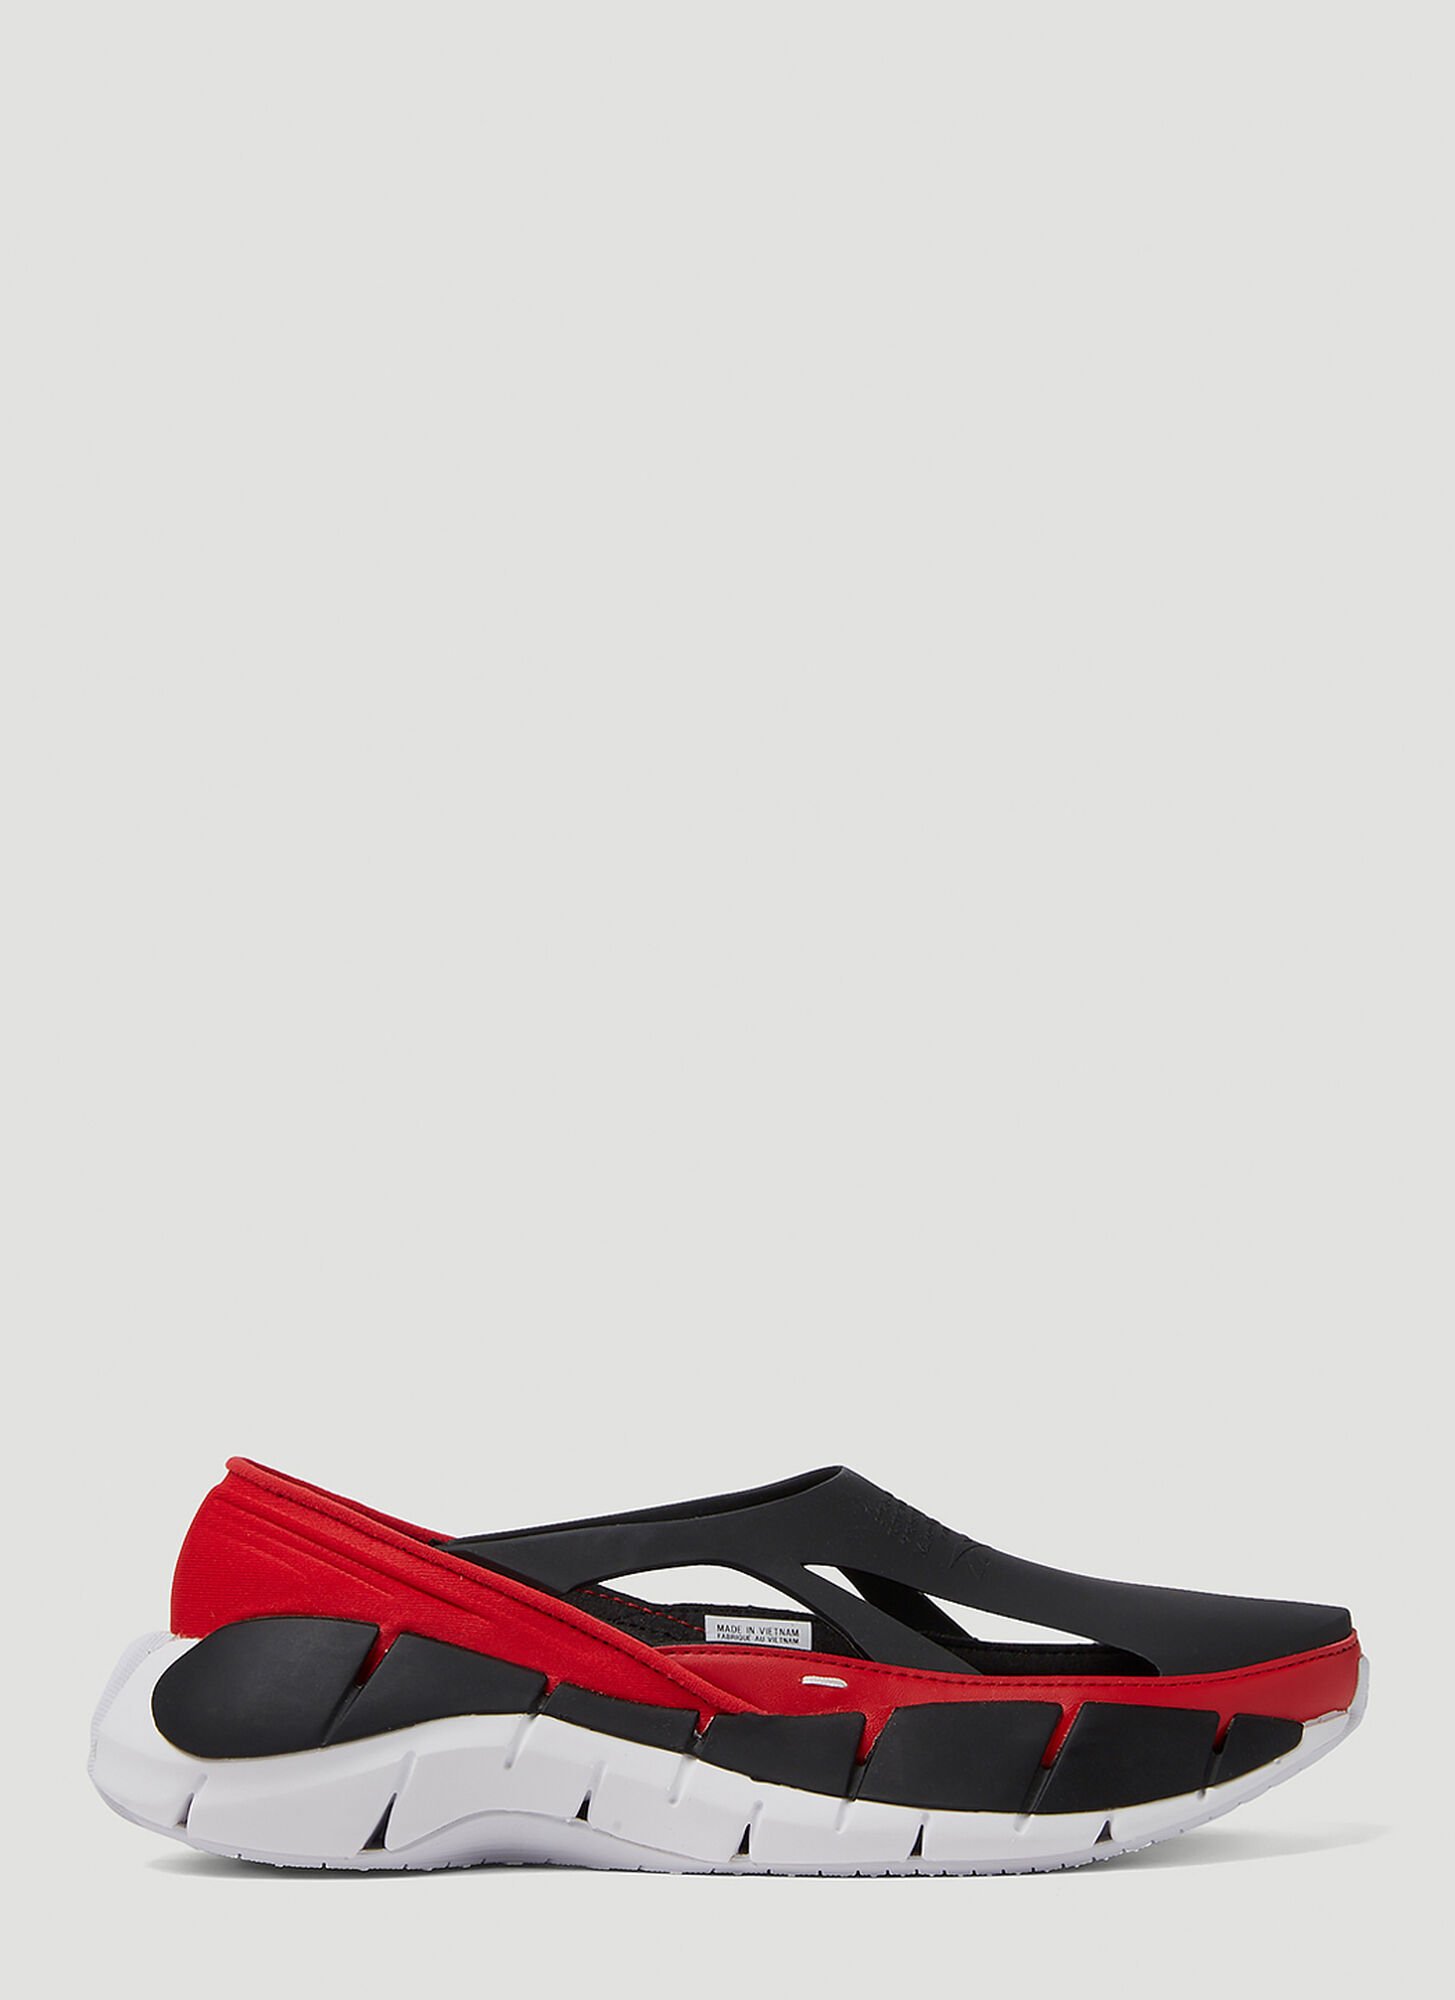 Maison Margiela X Reebok Tier 1 Croafer Sneakers Unisex Red